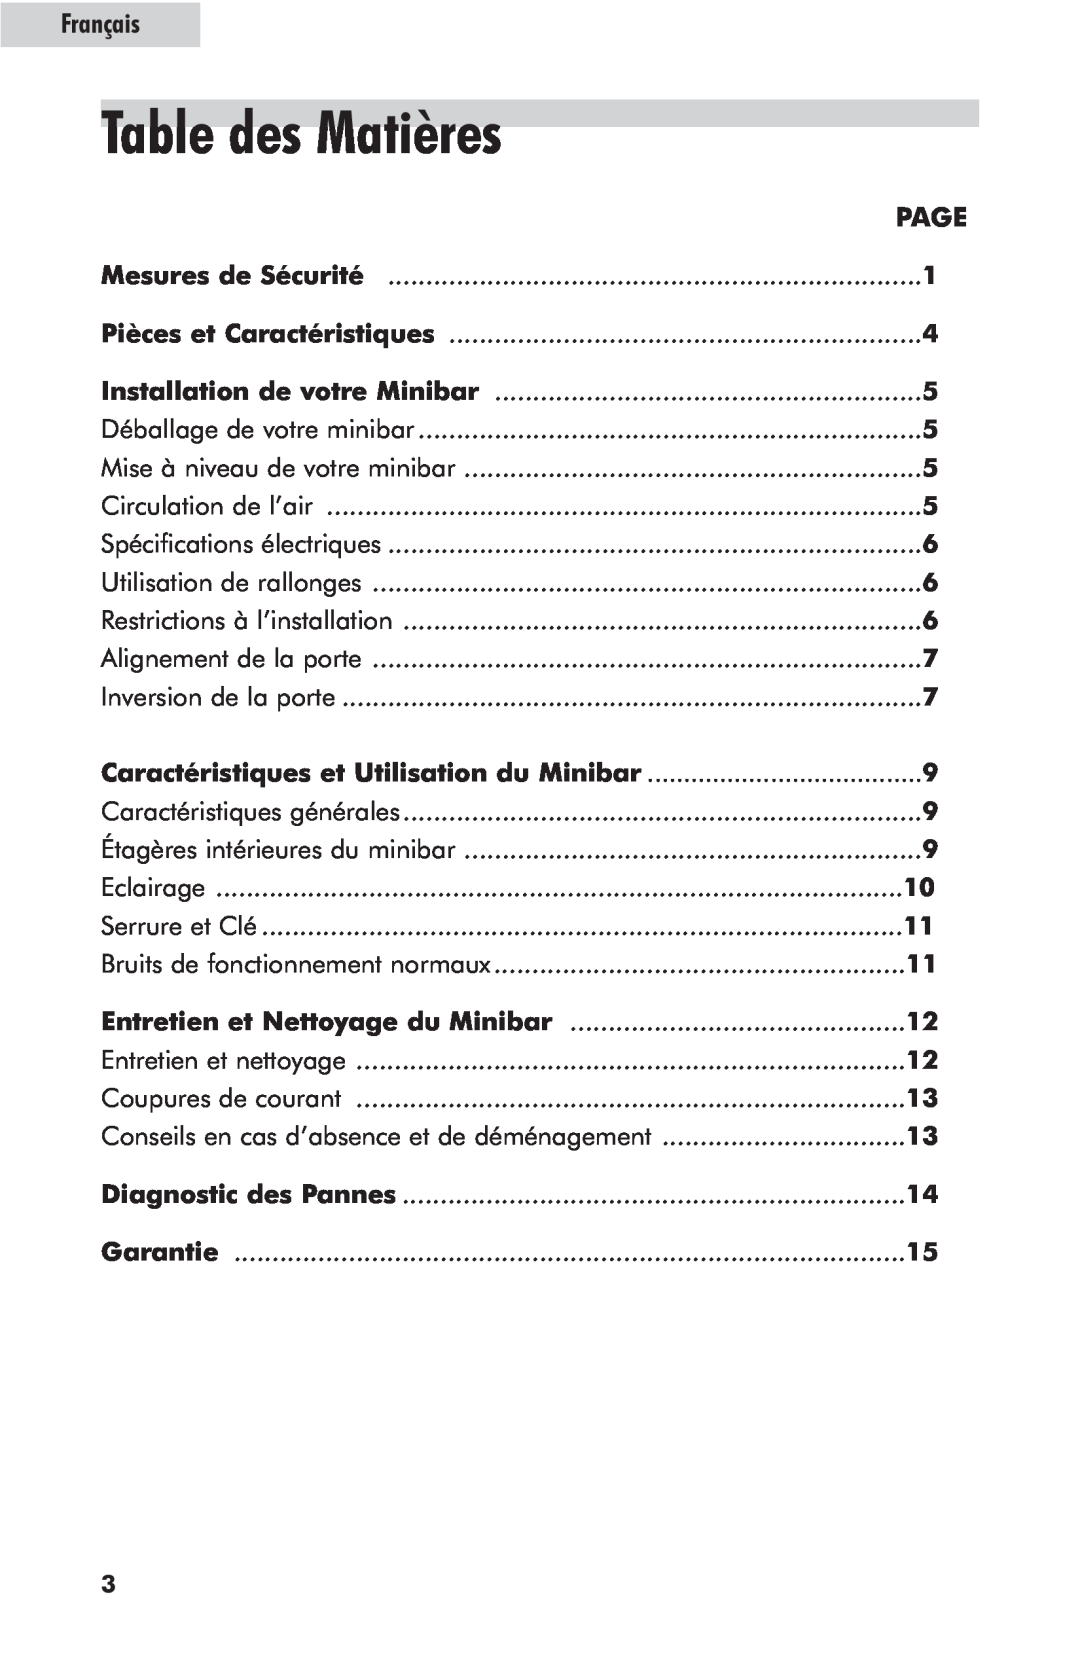 Haier hc125fvs user manual Table des Matières, Caractéristiques et Utilisation du Minibar, Français 